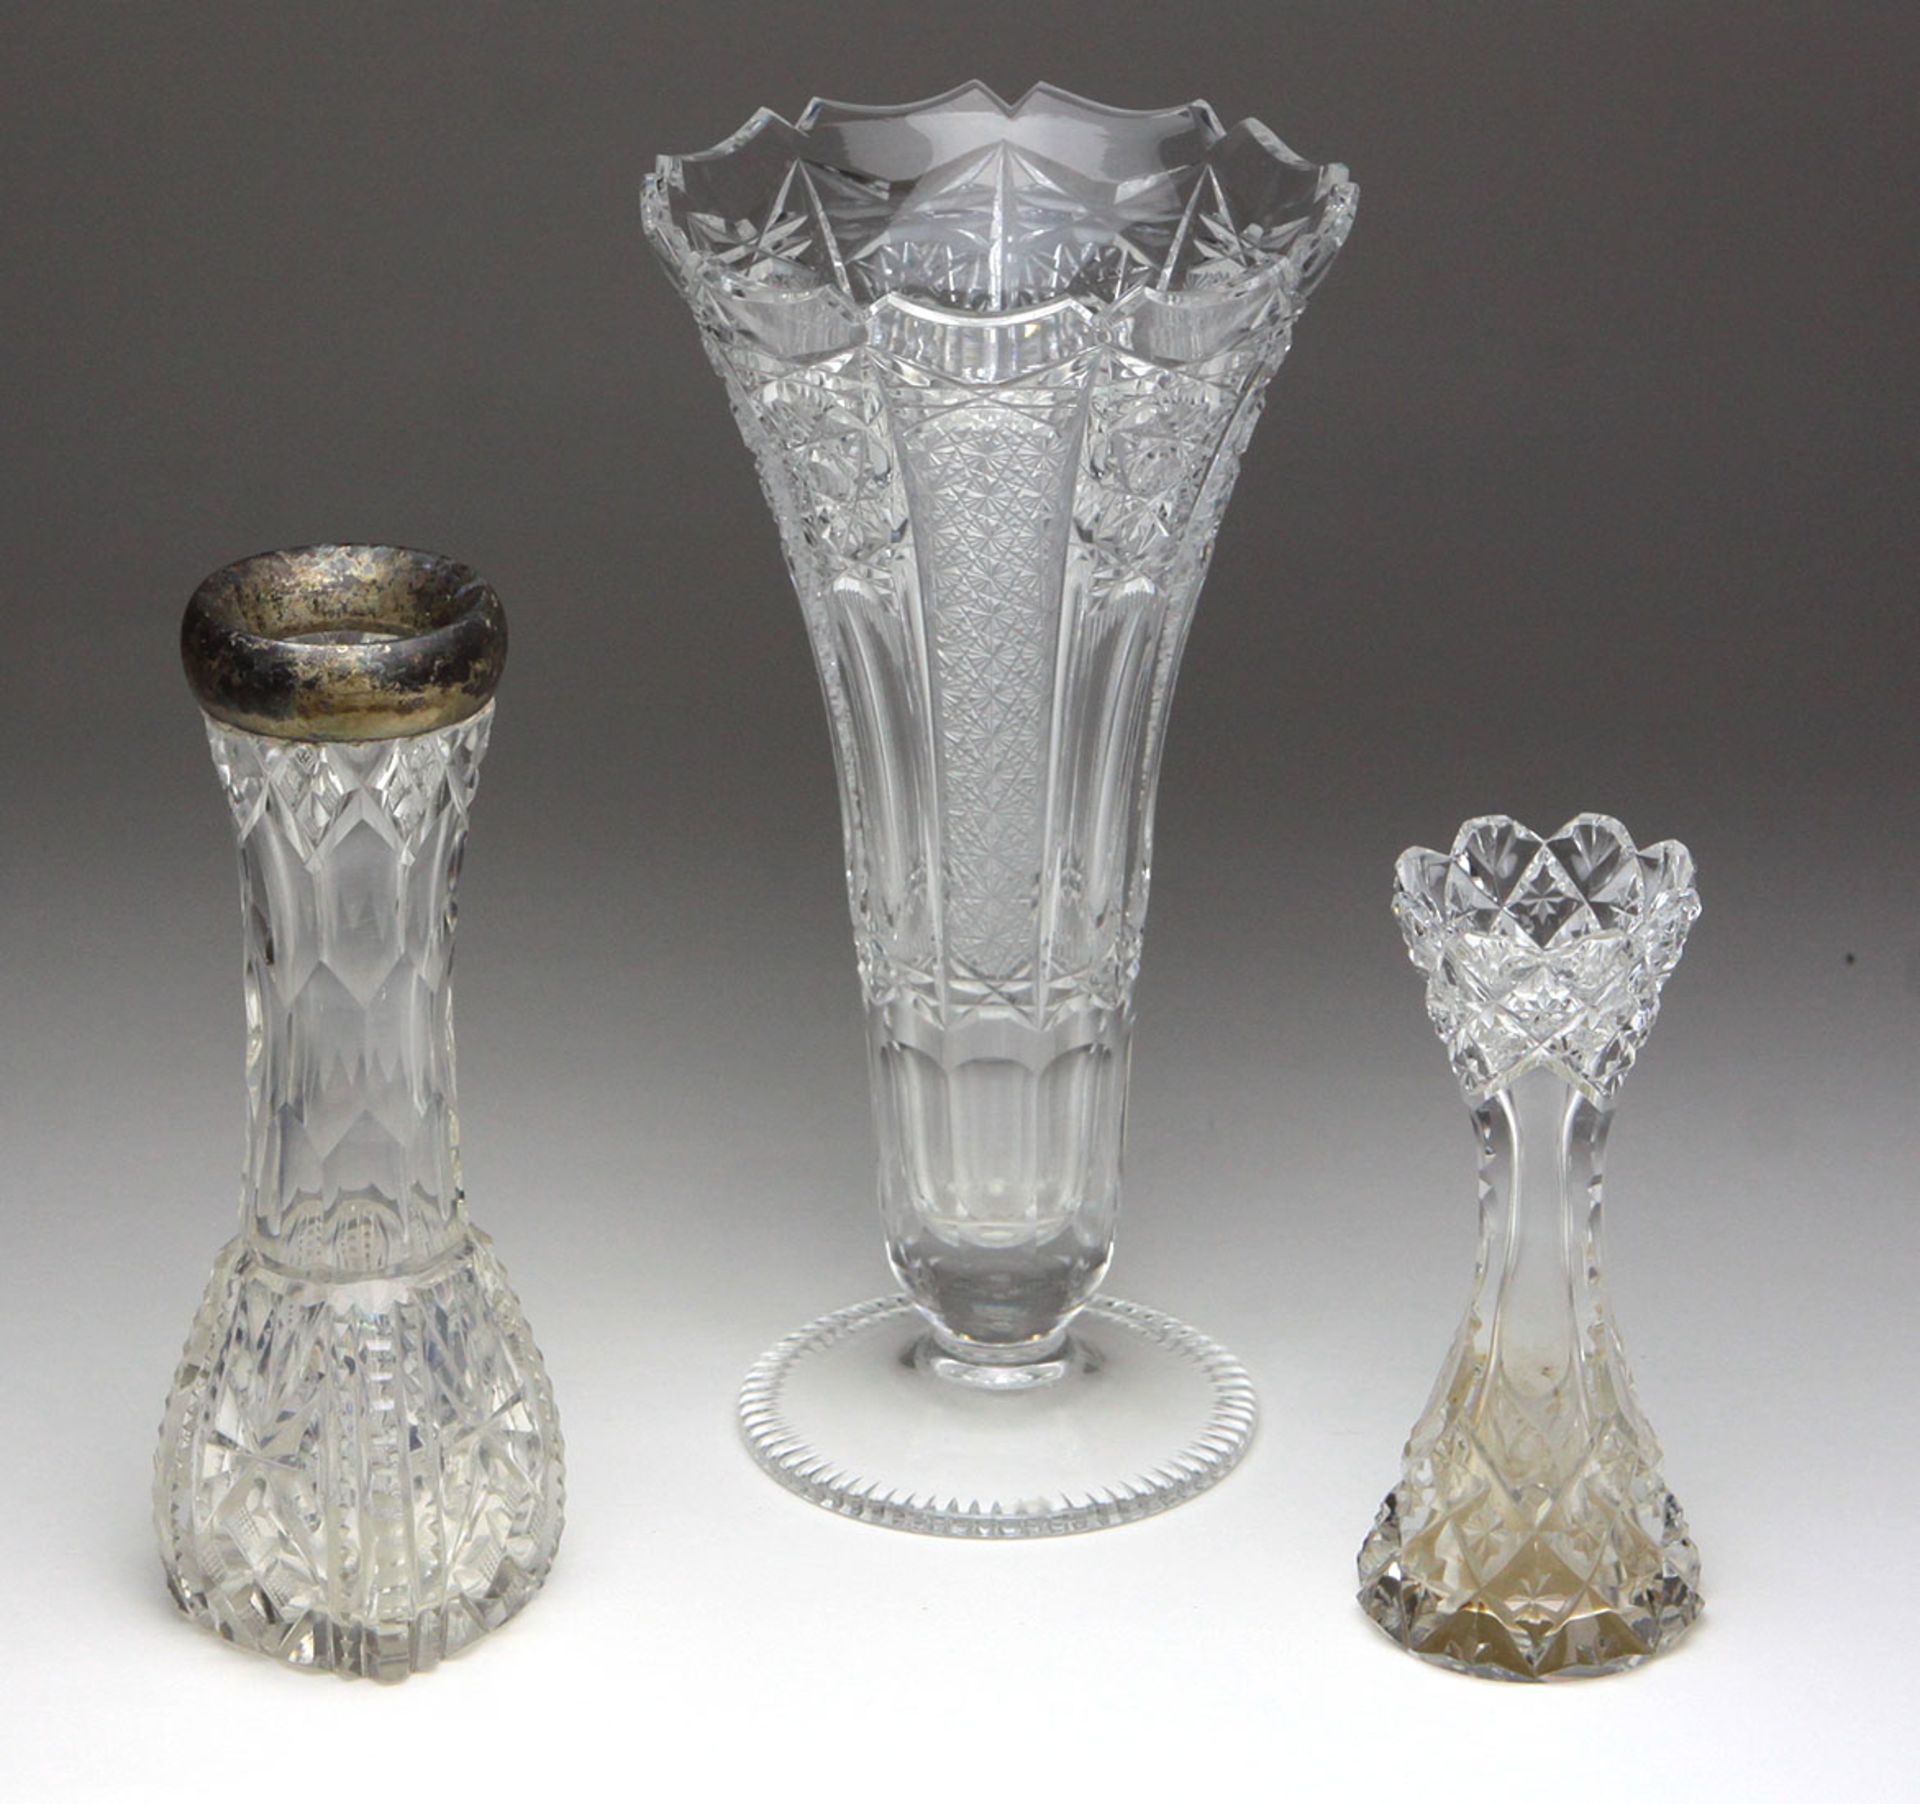 Kristall Vase mit Silberrand u.a.farbloses Kristallglas mundgeblasen u. von Hand besch